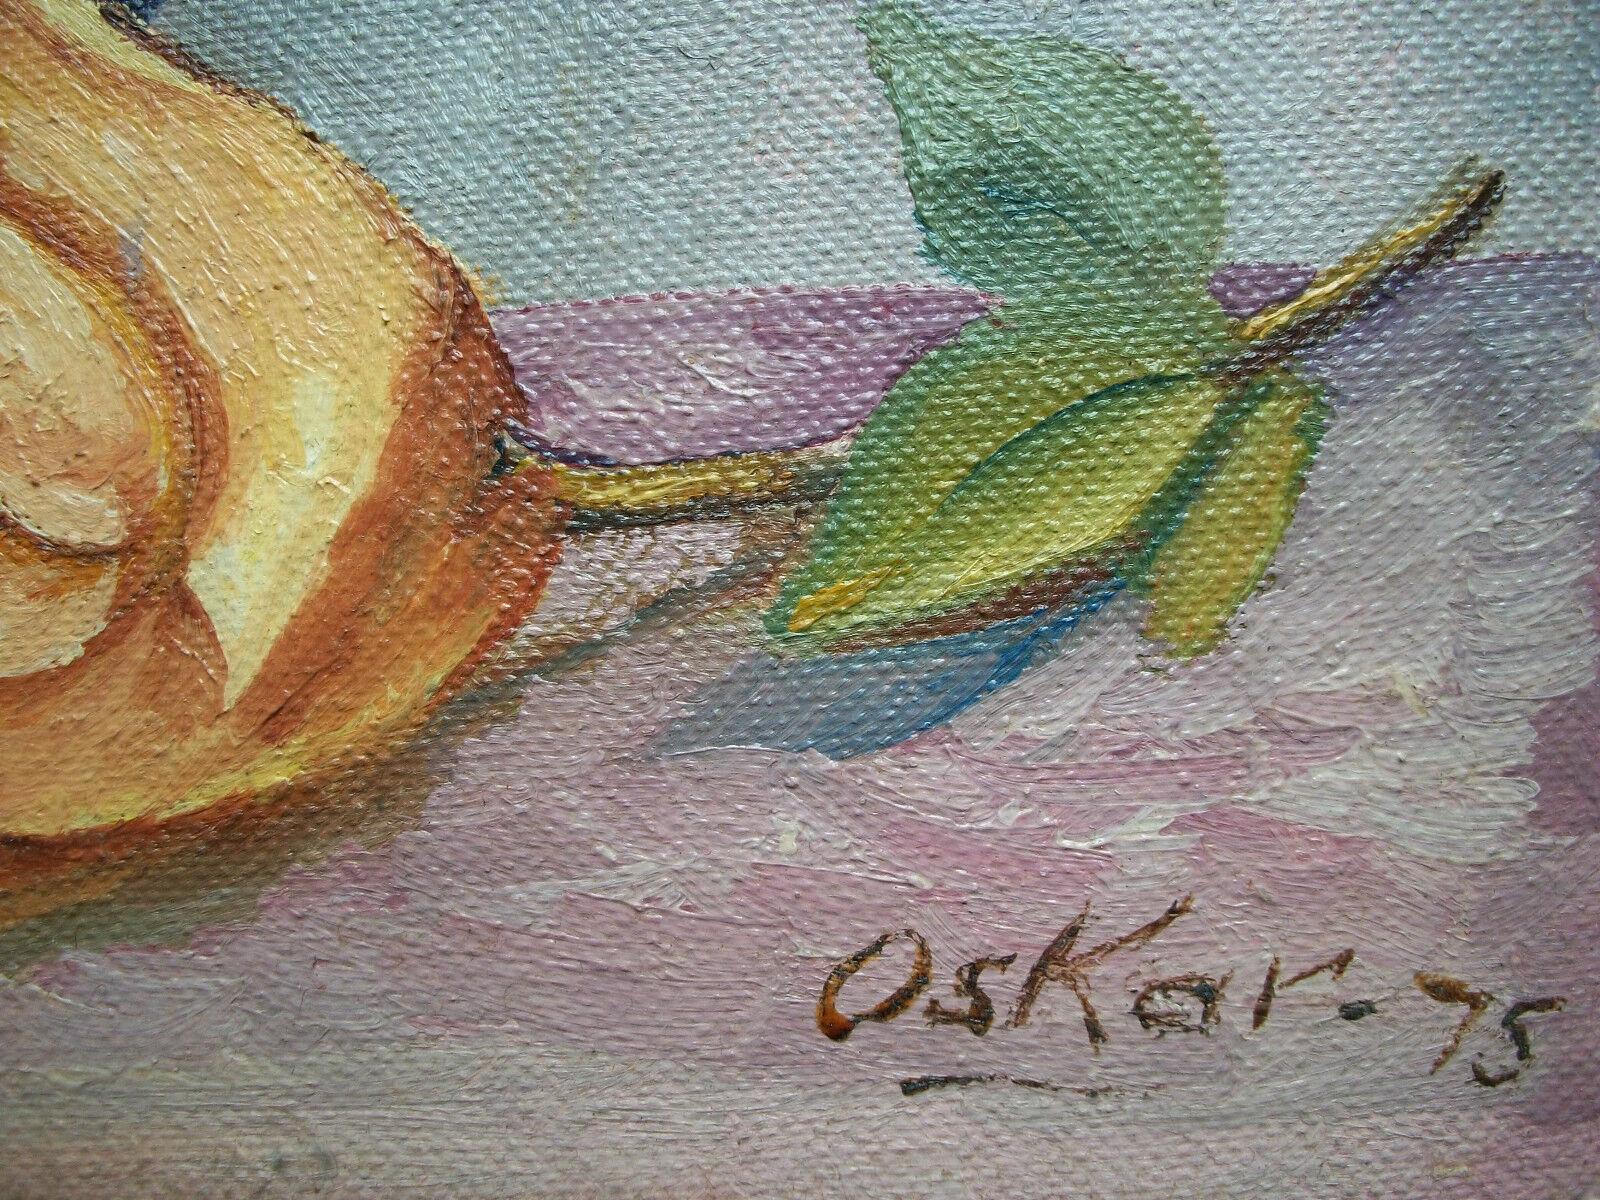 OSKAR - Nature morte florale vintage peinte à l'huile sur toile d'artiste - signée et datée - non encadrée - Canada - circa 1975.

Excellent état vintage - pas de perte - pas de dommage - pas de restauration - salissures superficielles dues à l'âge